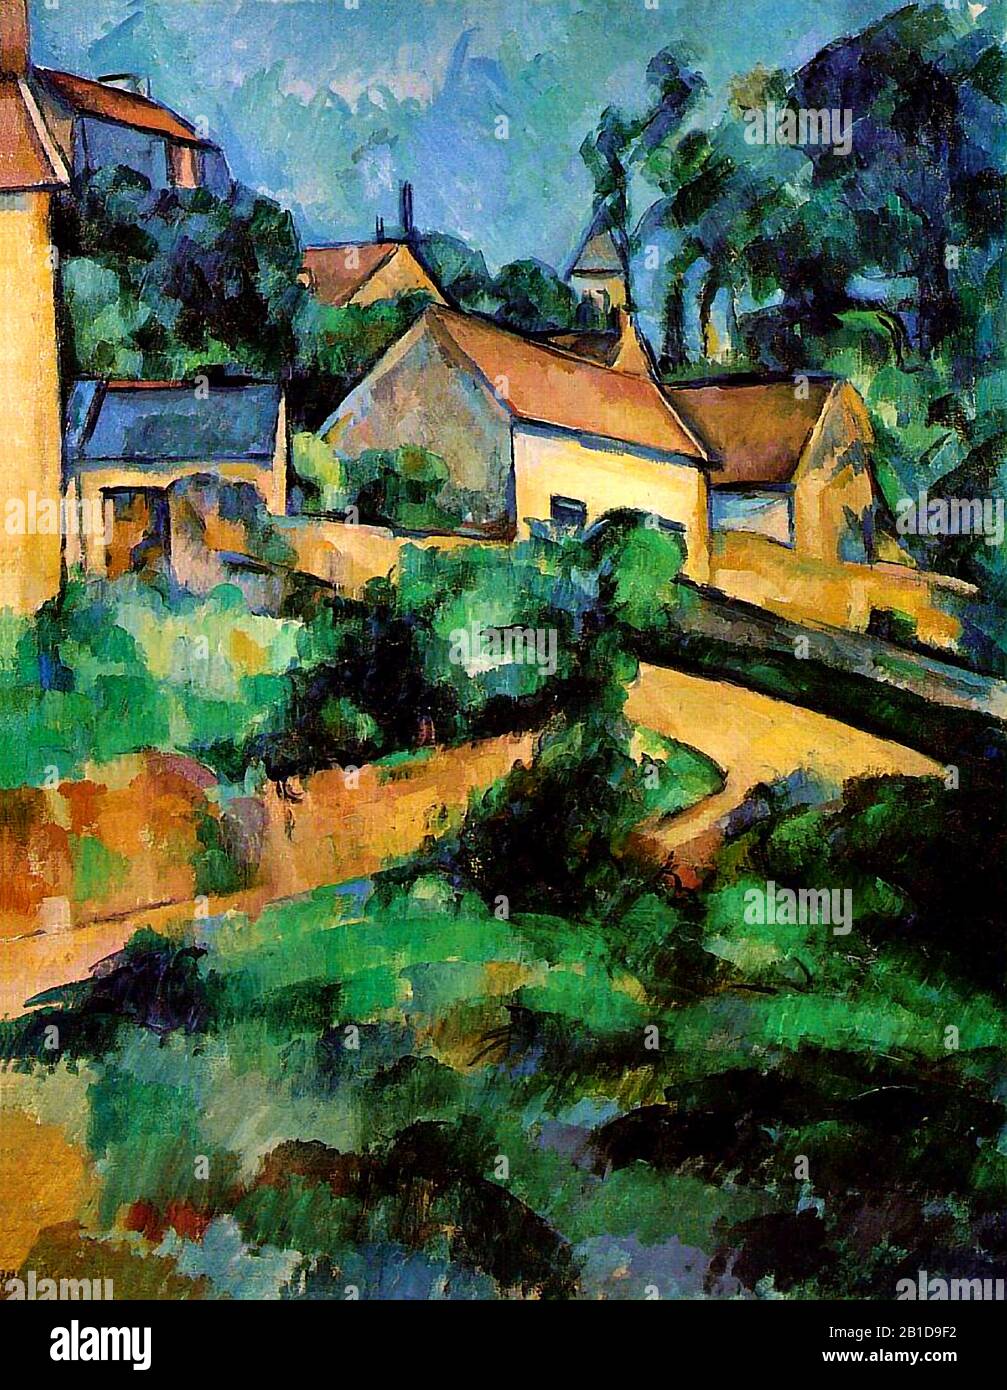 - Malerei des 19. Jahrhunderts von Paul Cézanne - Sehr hohe Auflösung und Qualitätsbild Stockfoto